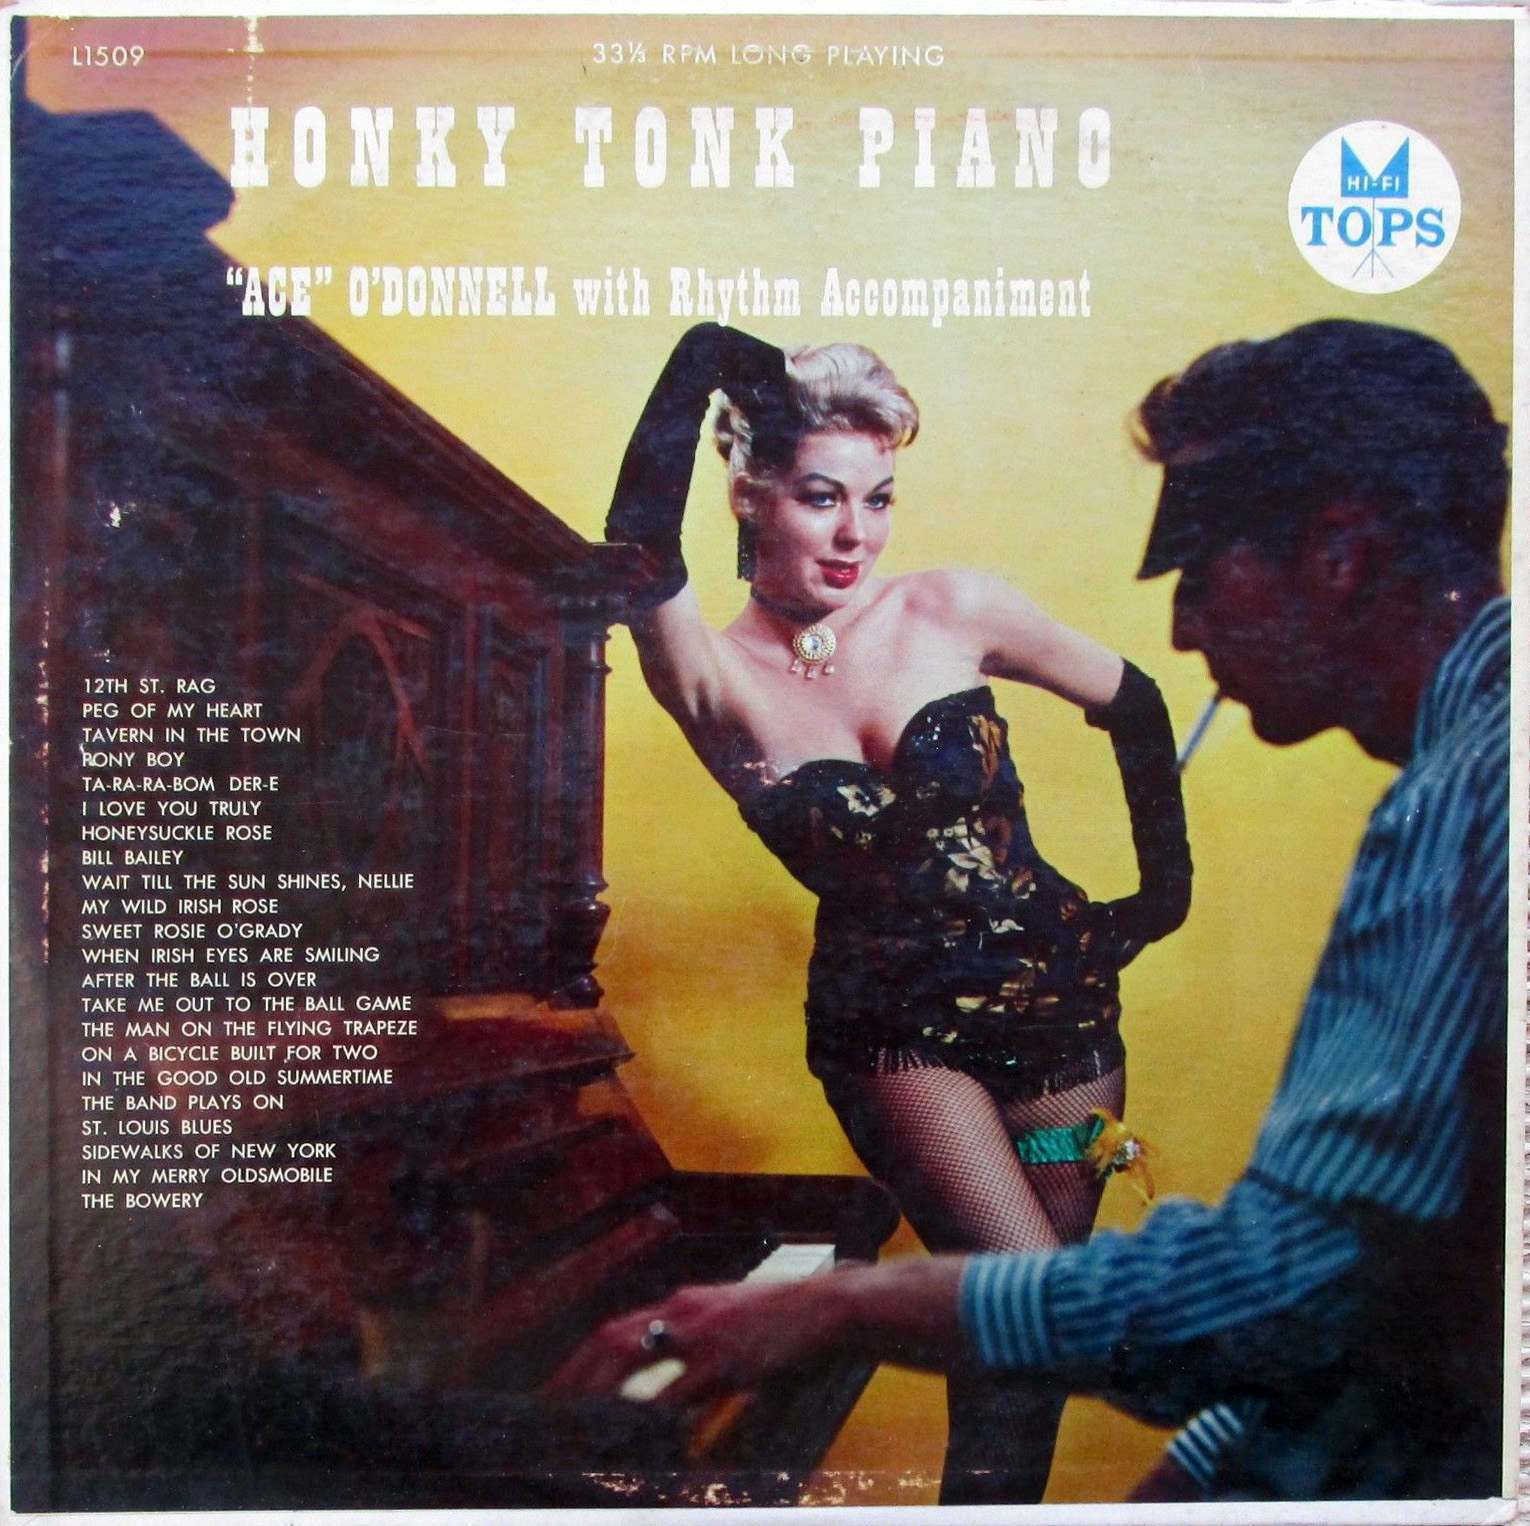 honky tonk piano (14)